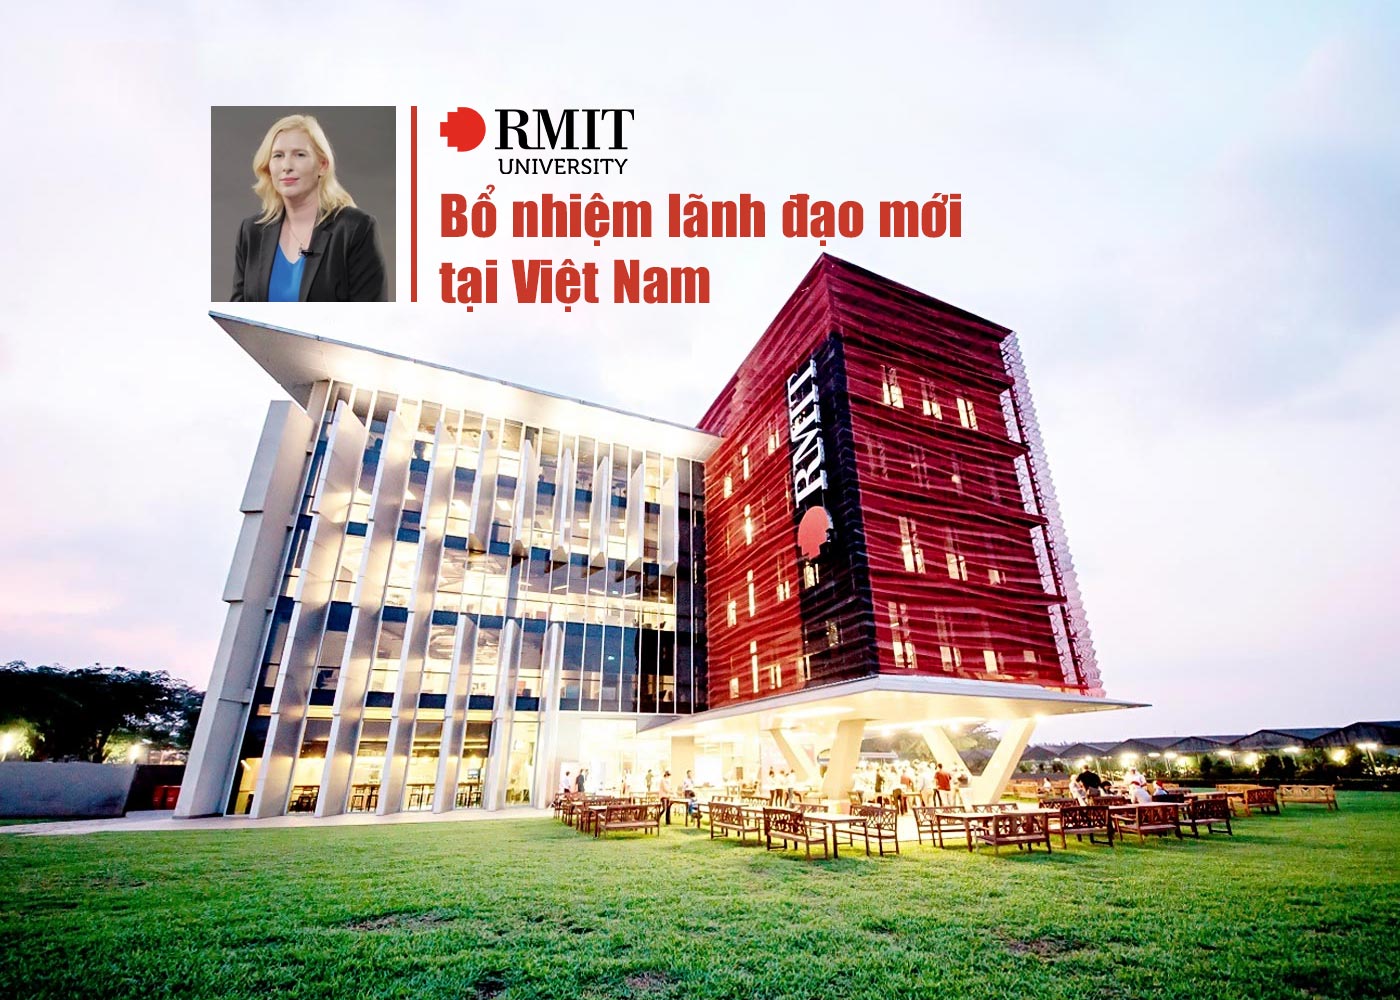 Đại học RMIT bổ nhiệm lãnh đạo mới tại Việt Nam - Ảnh 1